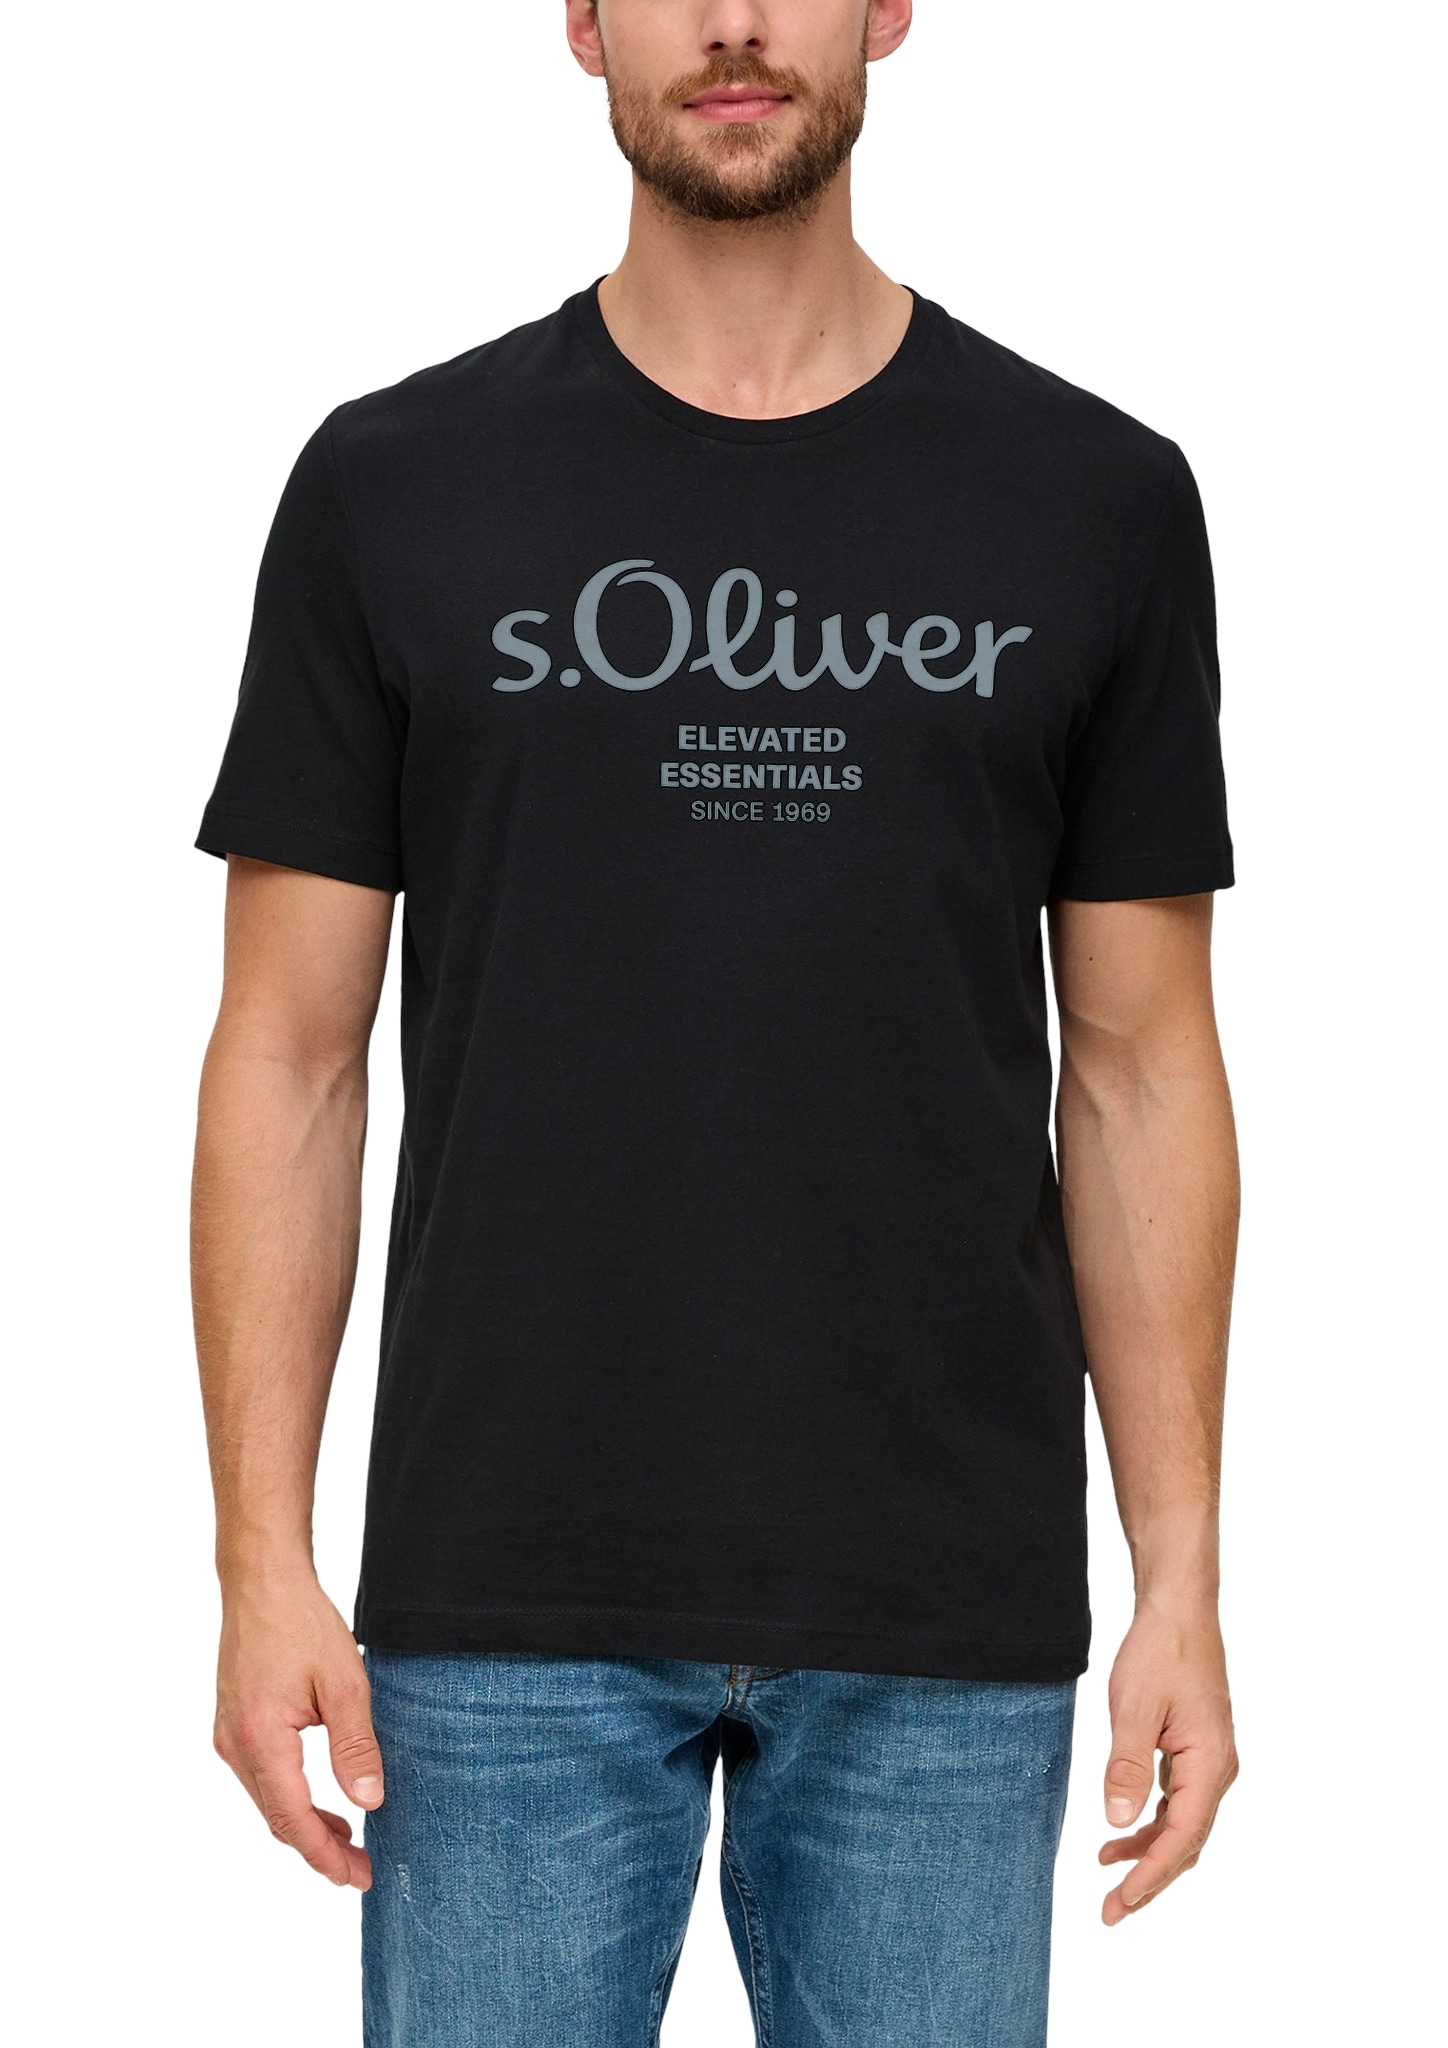 Trendige s.Oliver Herren Shirts kaufen ♕ online günstig